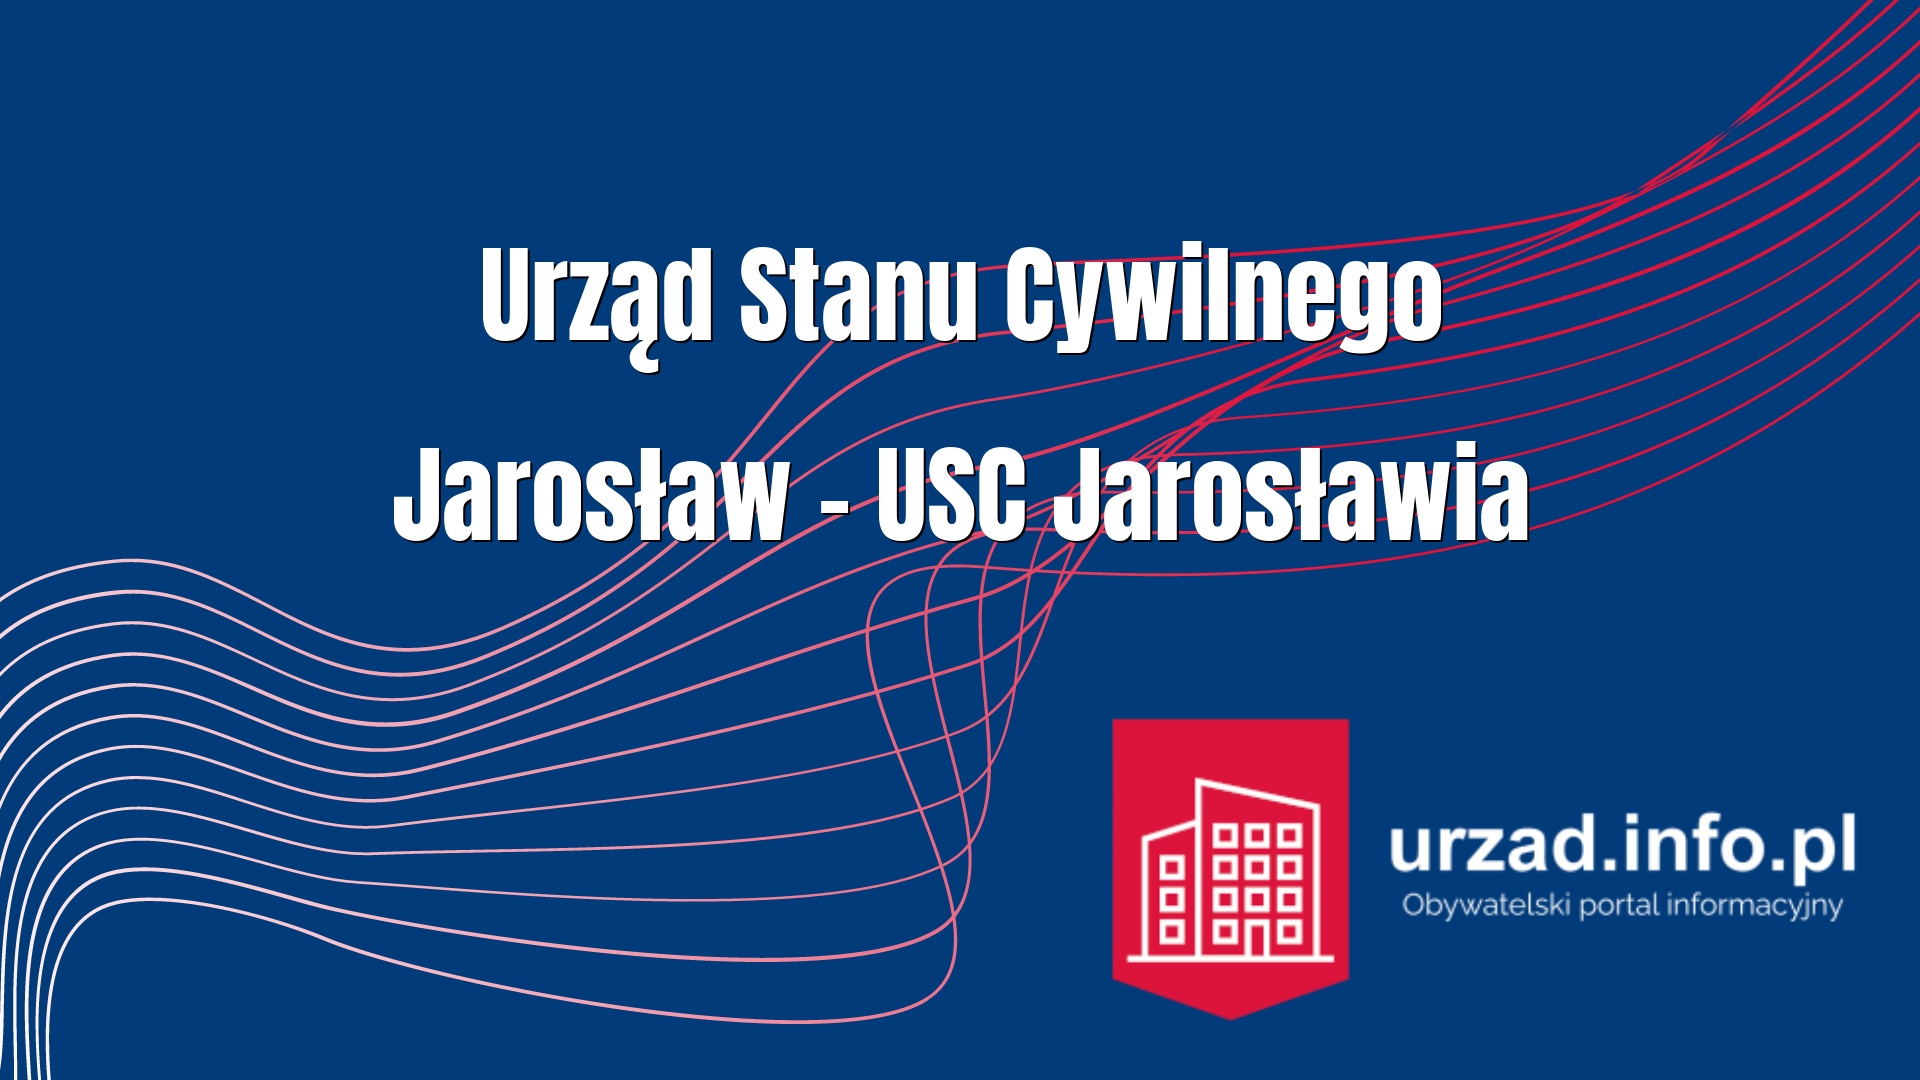 Urząd Stanu Cywilnego Jarosław – USC Jarosławia